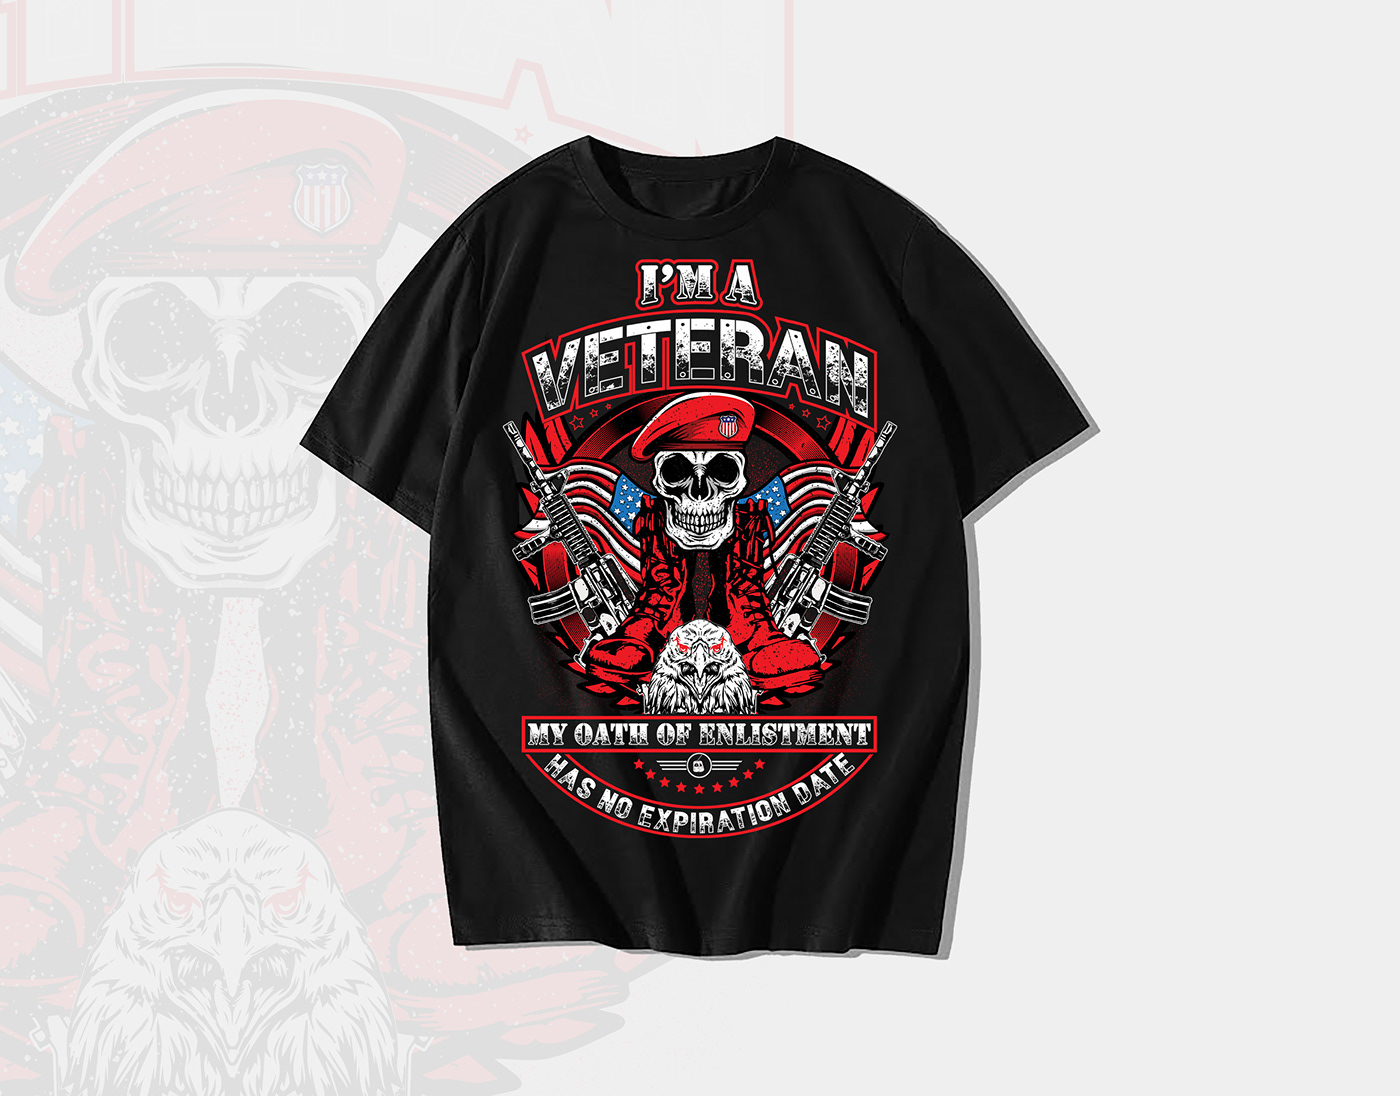 

Veteran T-Shirt Design,
Veteran T-Shirt,
Veterans Day,
T-Shirt Design,
veterans,
Vintage T-Shirt D